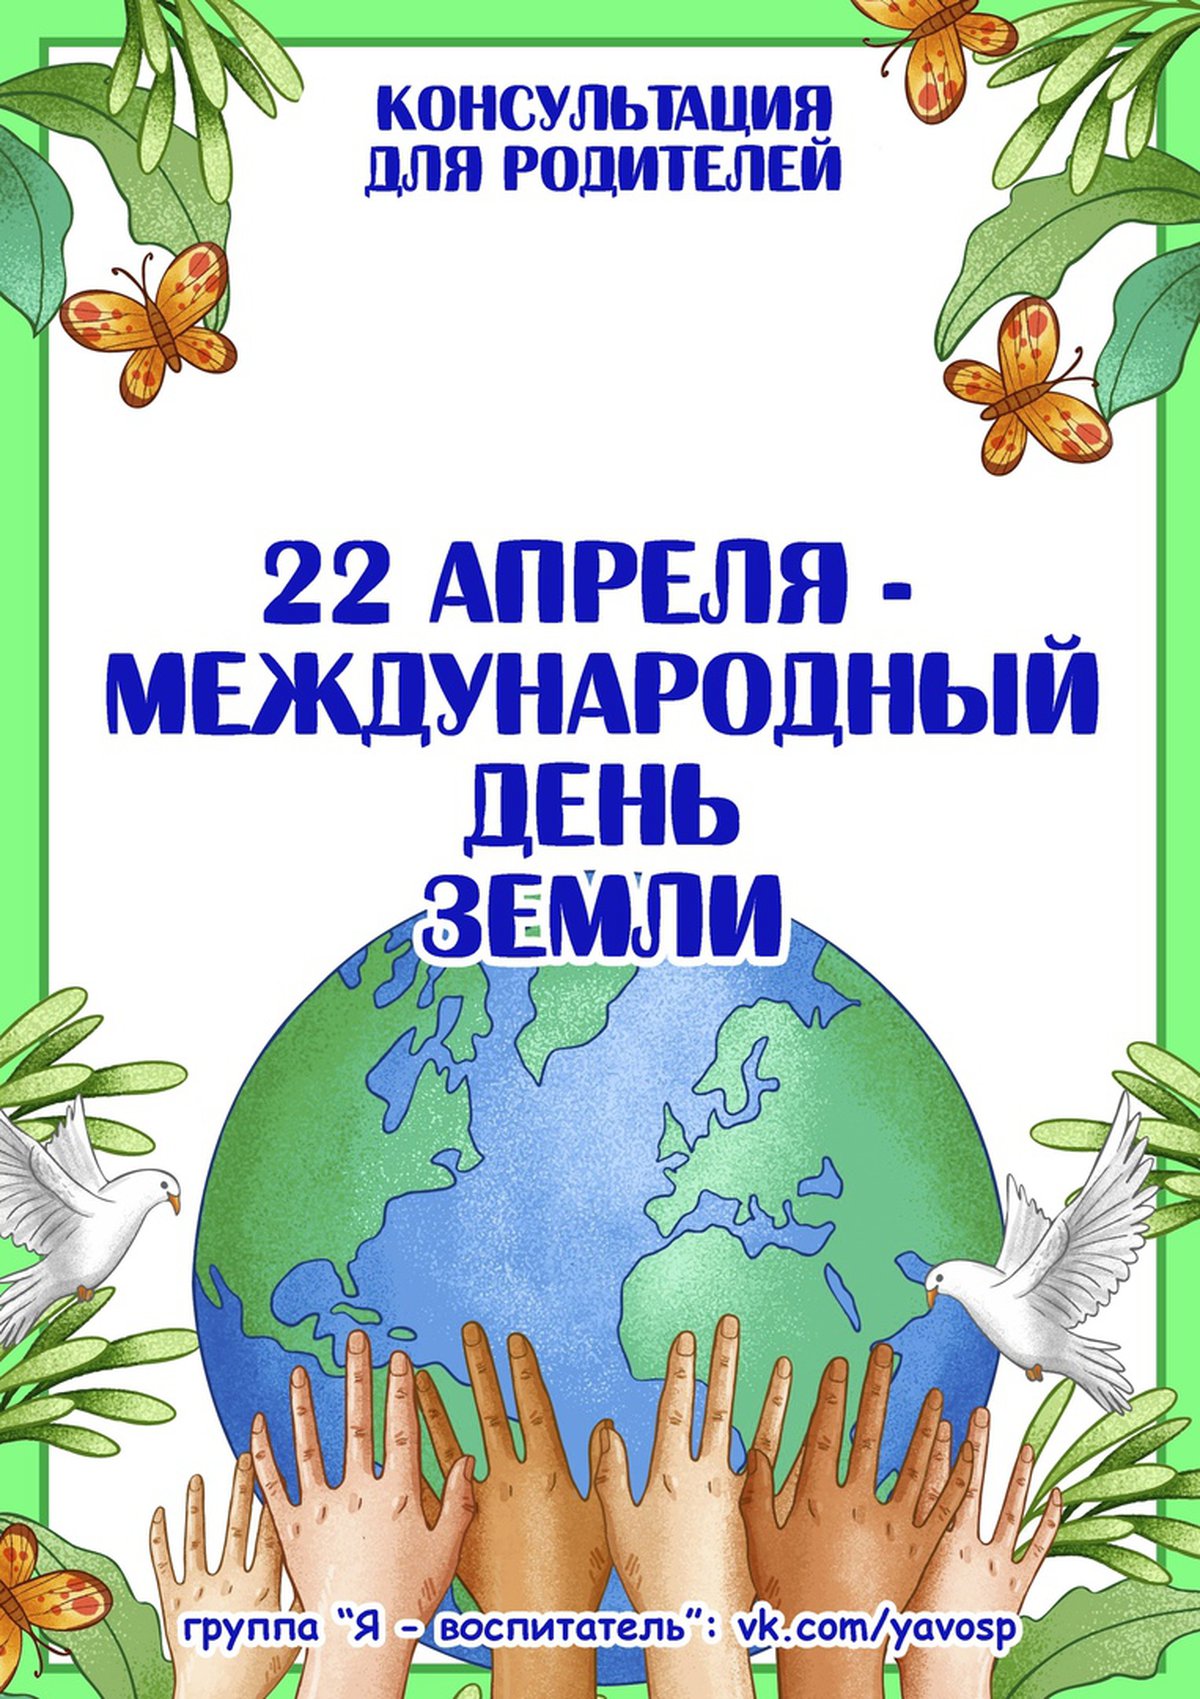 Международный день земли 22 апреля 2021